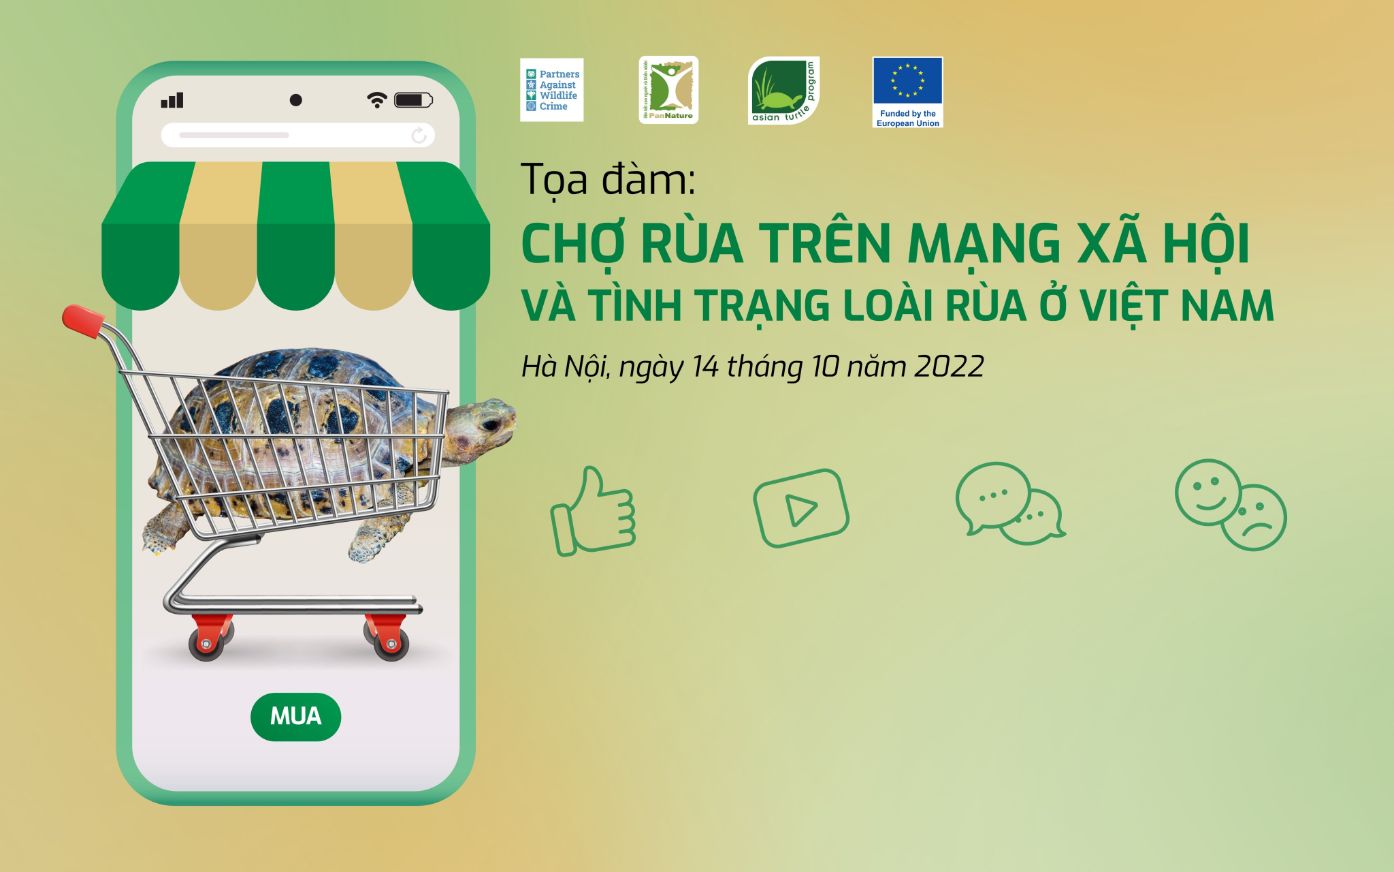 Tọa đàm: Chợ rùa trên mạng xã hội và tình trạng loài rùa ở Việt Nam